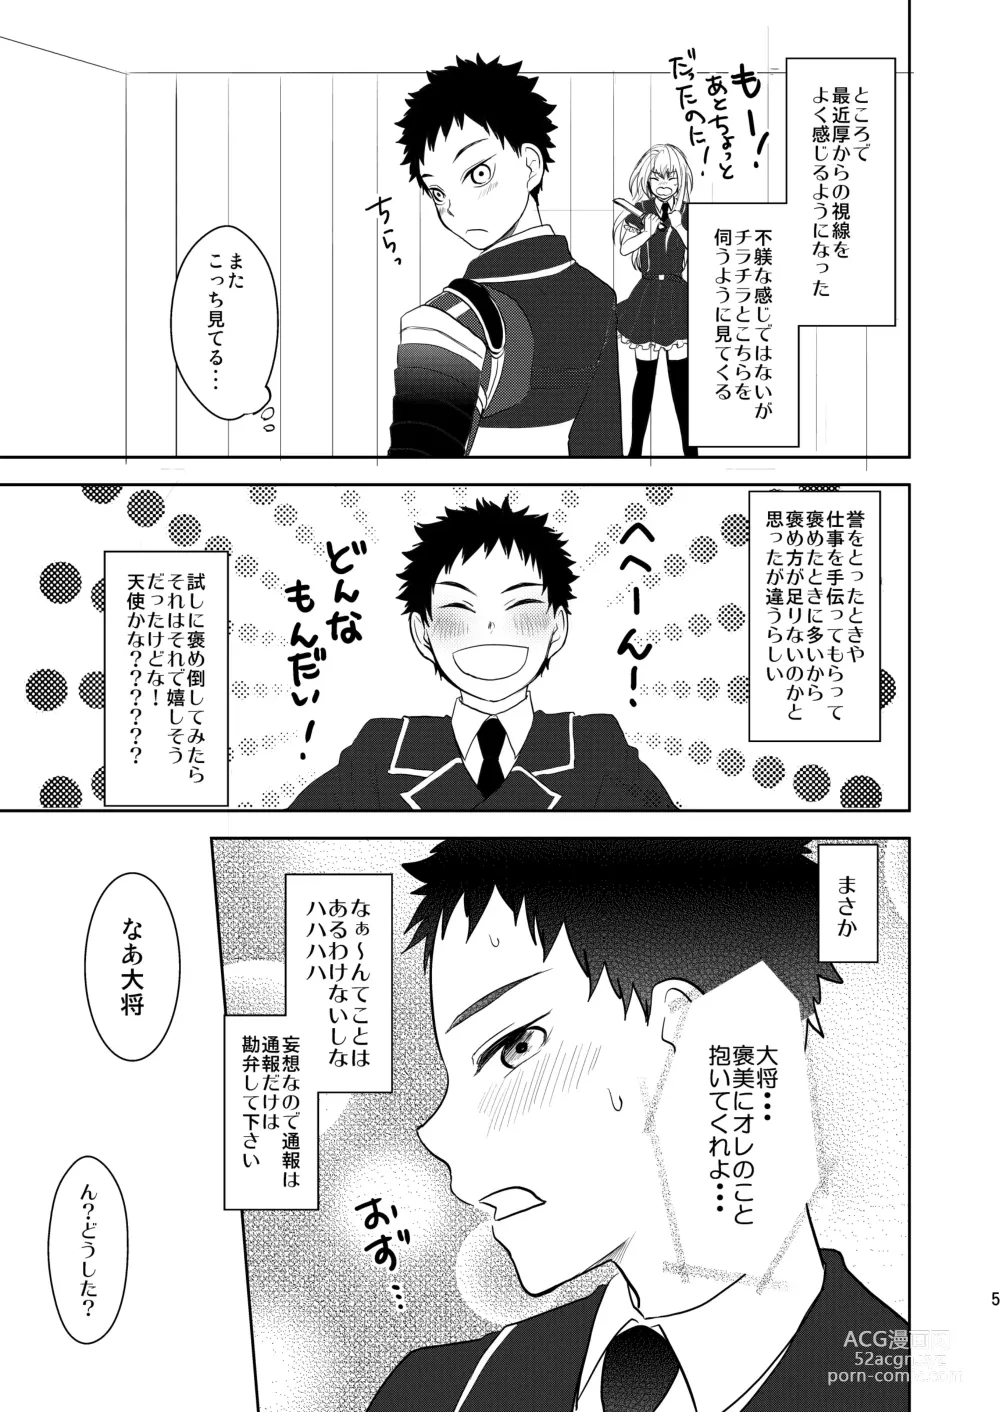 Page 4 of doujinshi Koukishinousei na Ore no Kawaii Kinji ga Yotogi o Sematte Kuru